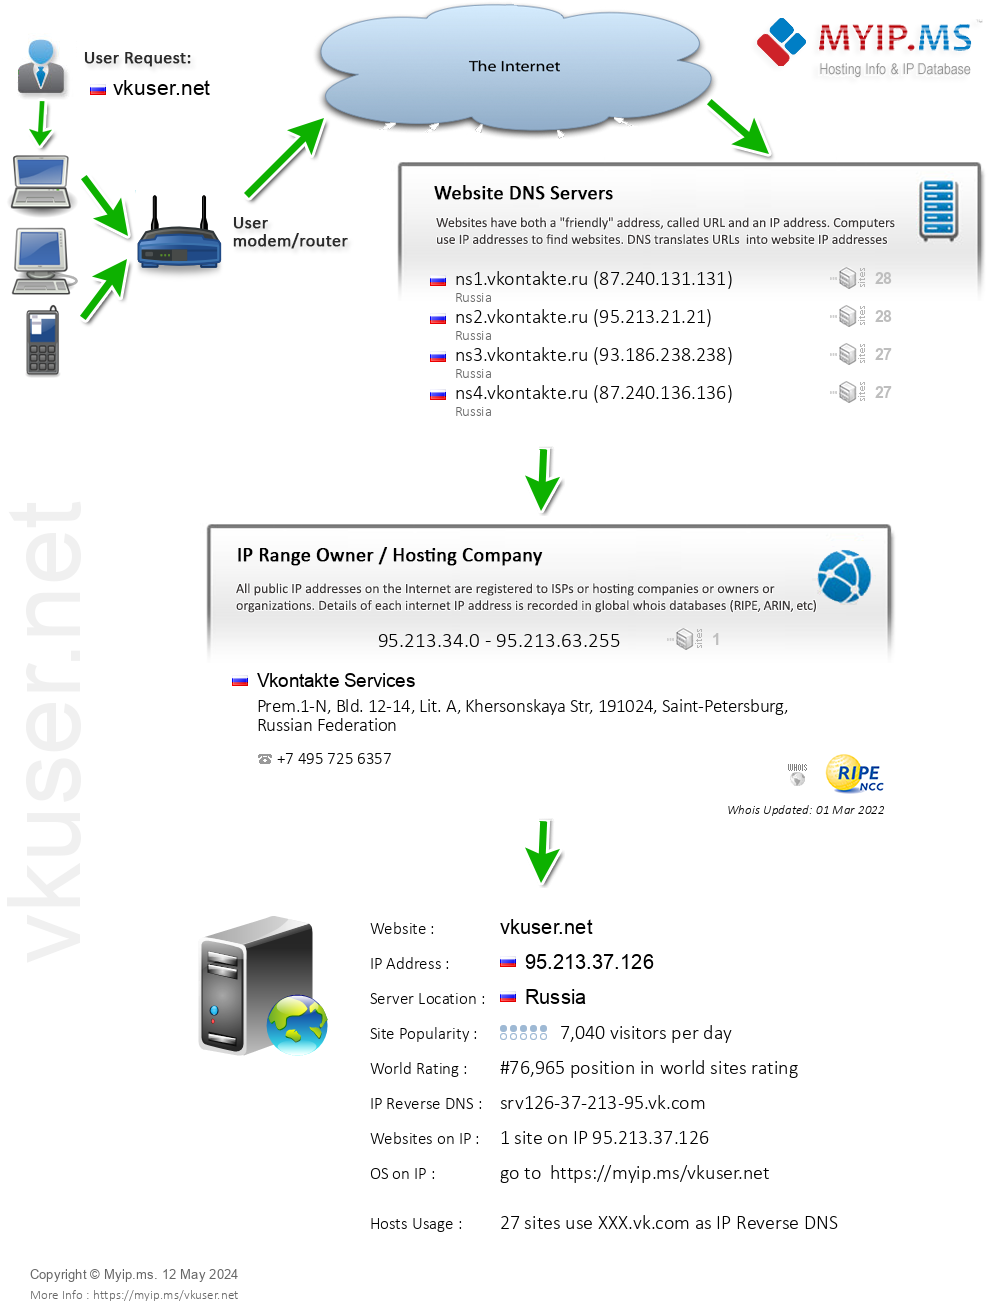 Vkuser.net - Website Hosting Visual IP Diagram